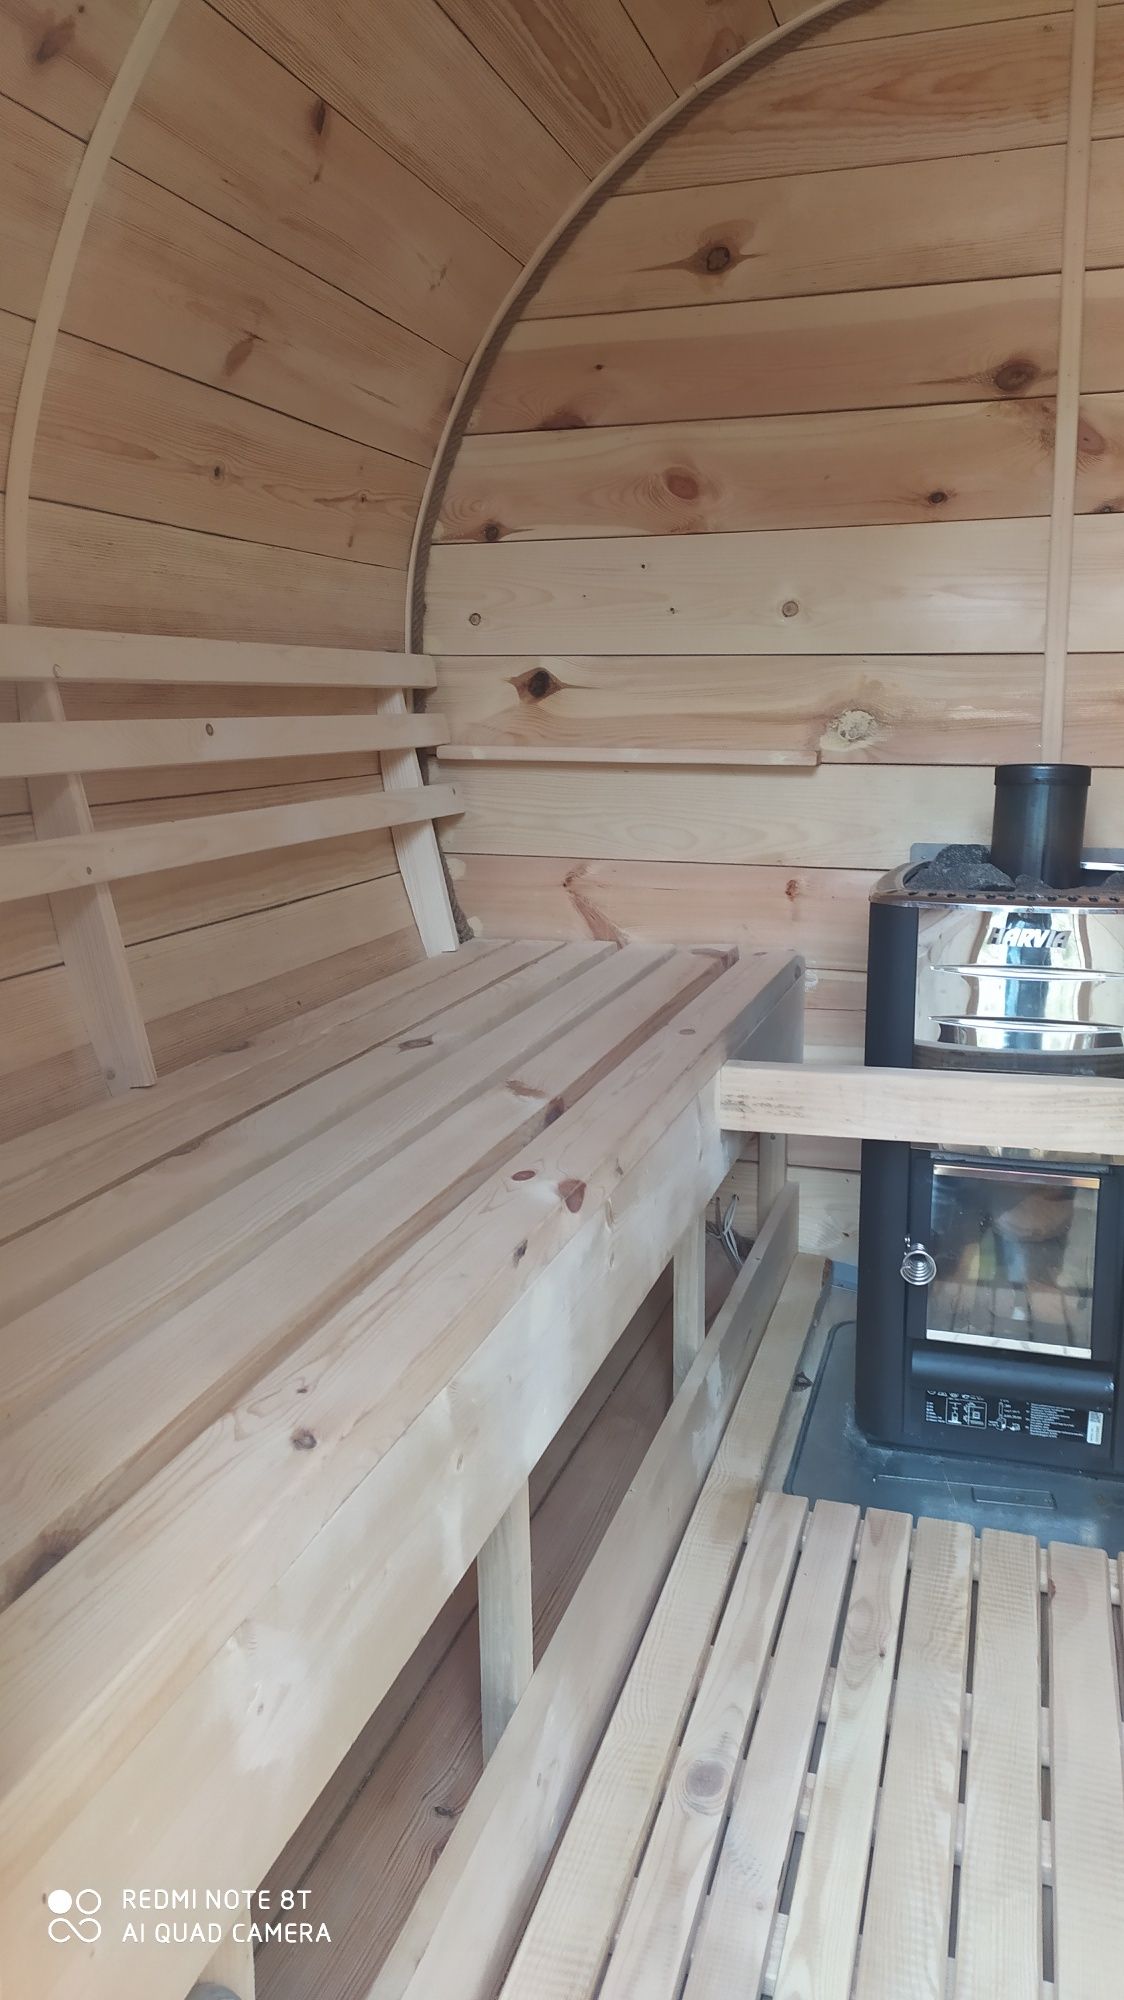 Sauna mobilna opalana drewnem do wynajecia długi weekend, impreza